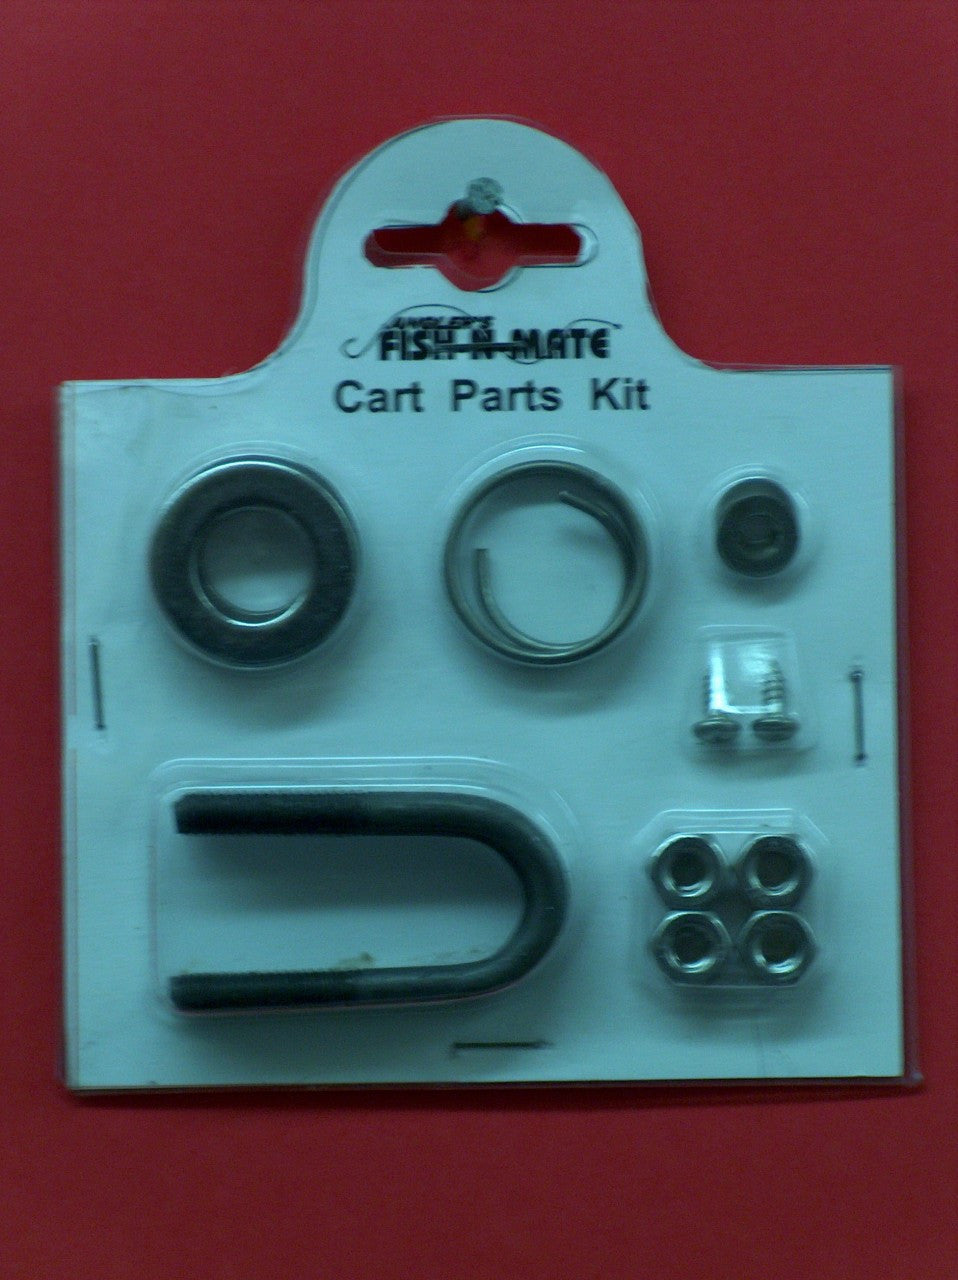 Parts Kit for Fish N Mate Fishing Carts